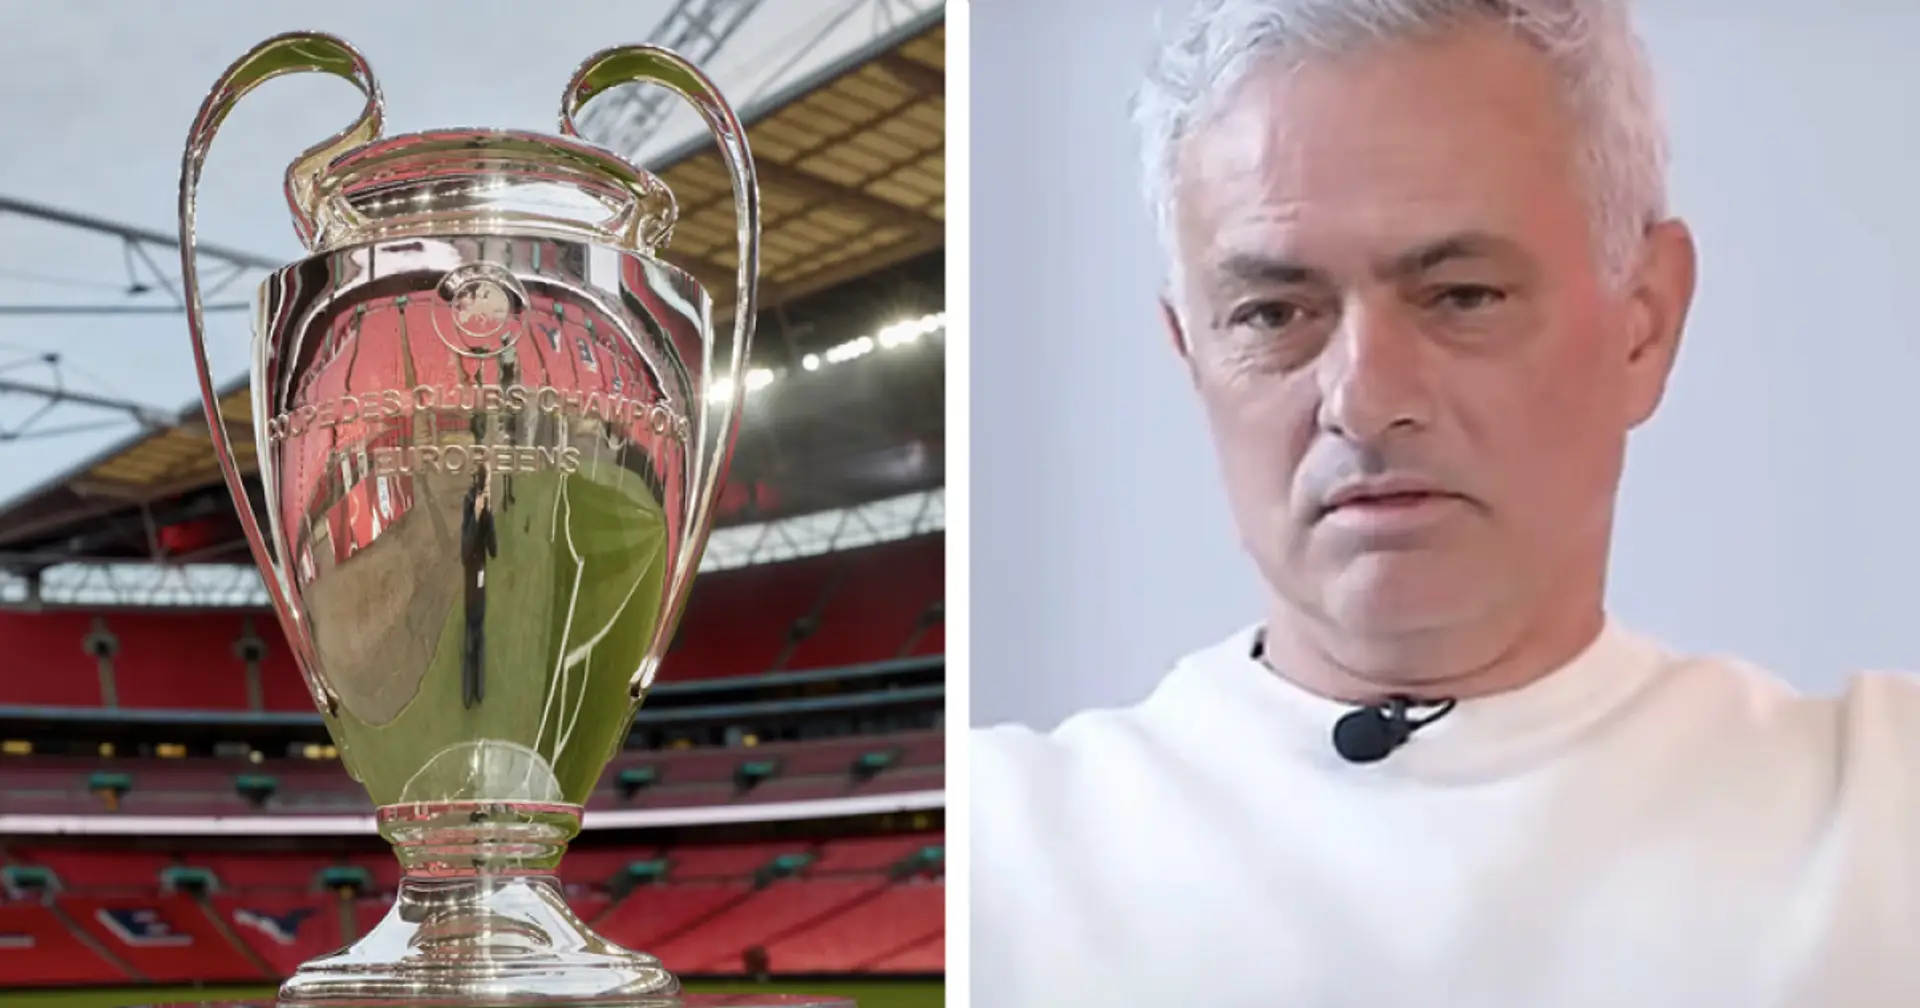 Jose Mourinho verrät, dass er will, dass Real Madrid die Champions League "für einen Mann" gewinnt